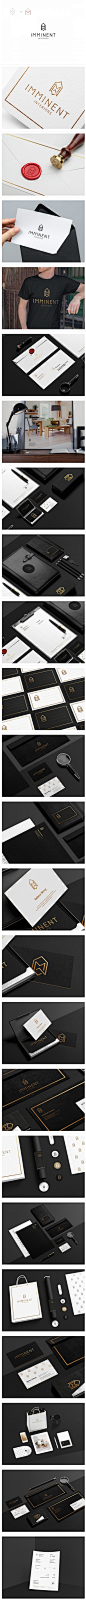 室内设计工作室品牌VI设计 展示 LOGO 卡片 T恤 信封 黑色 精美 高端 公司室内设计 品牌视觉 手提袋 包装 平面设计  公司VI #排版# #字体#@北坤人素材